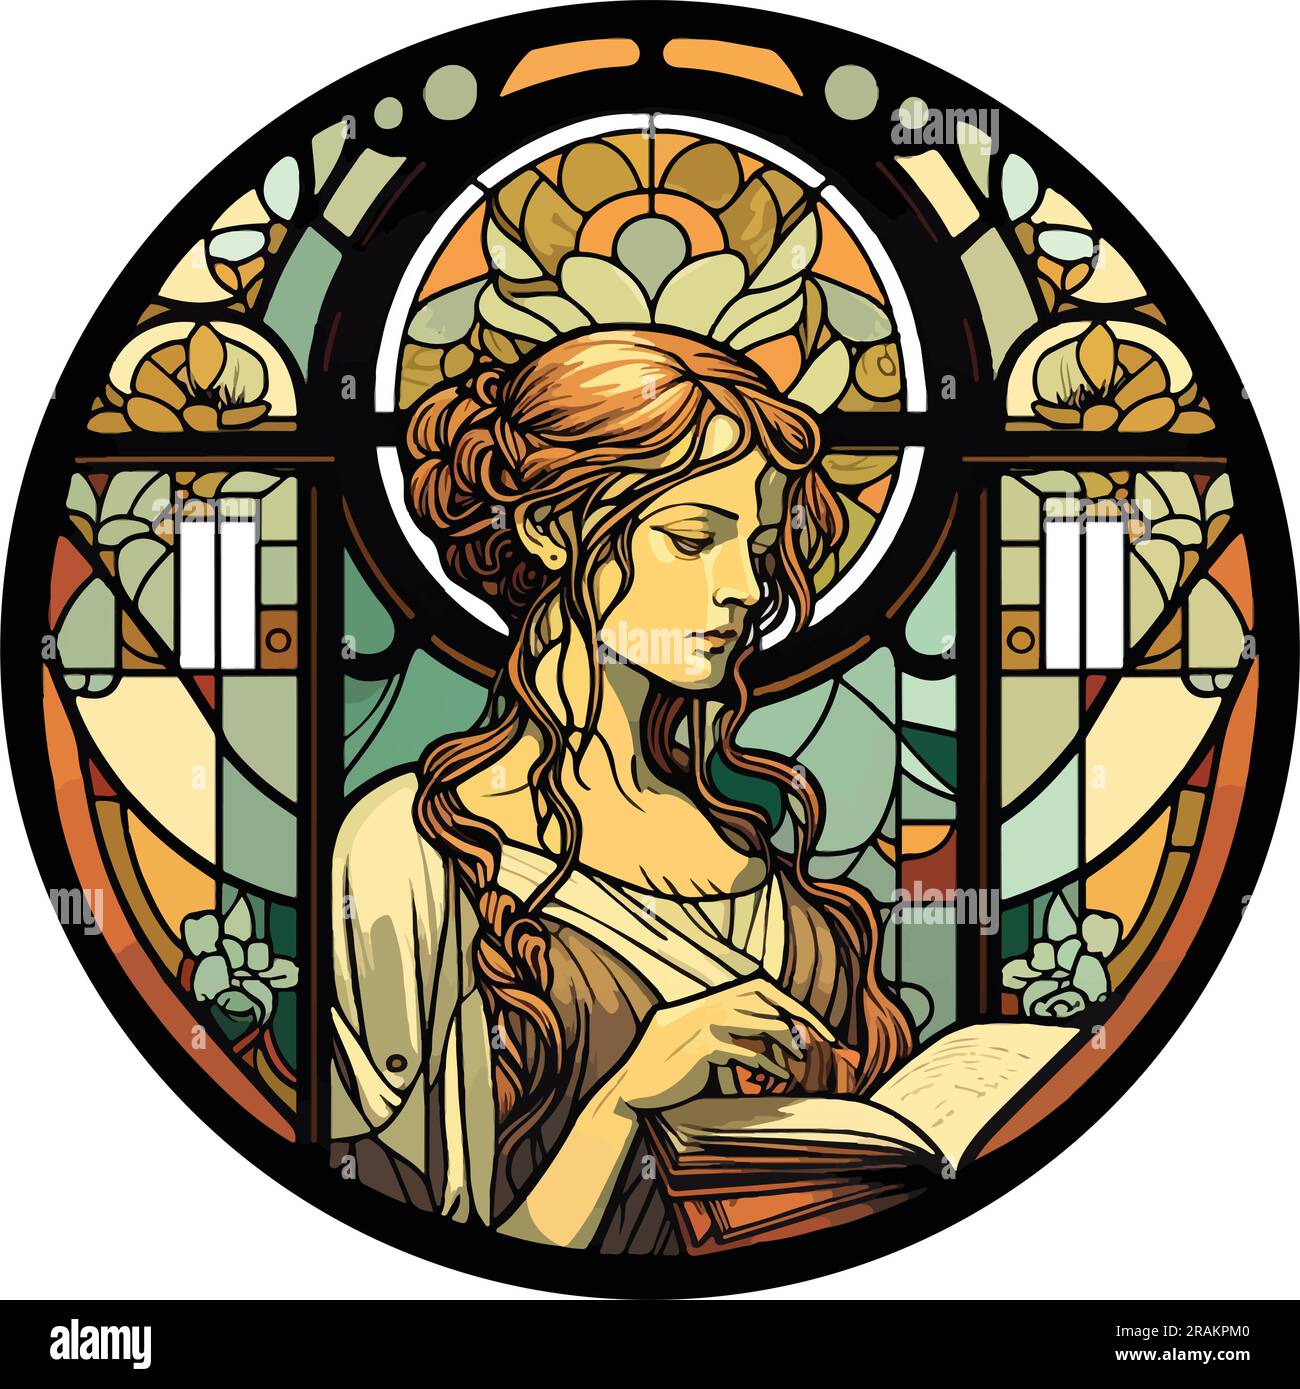 Buntglasfenster im Jugendstil mit einer Frau, die Buch liest, runder Rahmen, Blumenmotiv. Stock Vektor